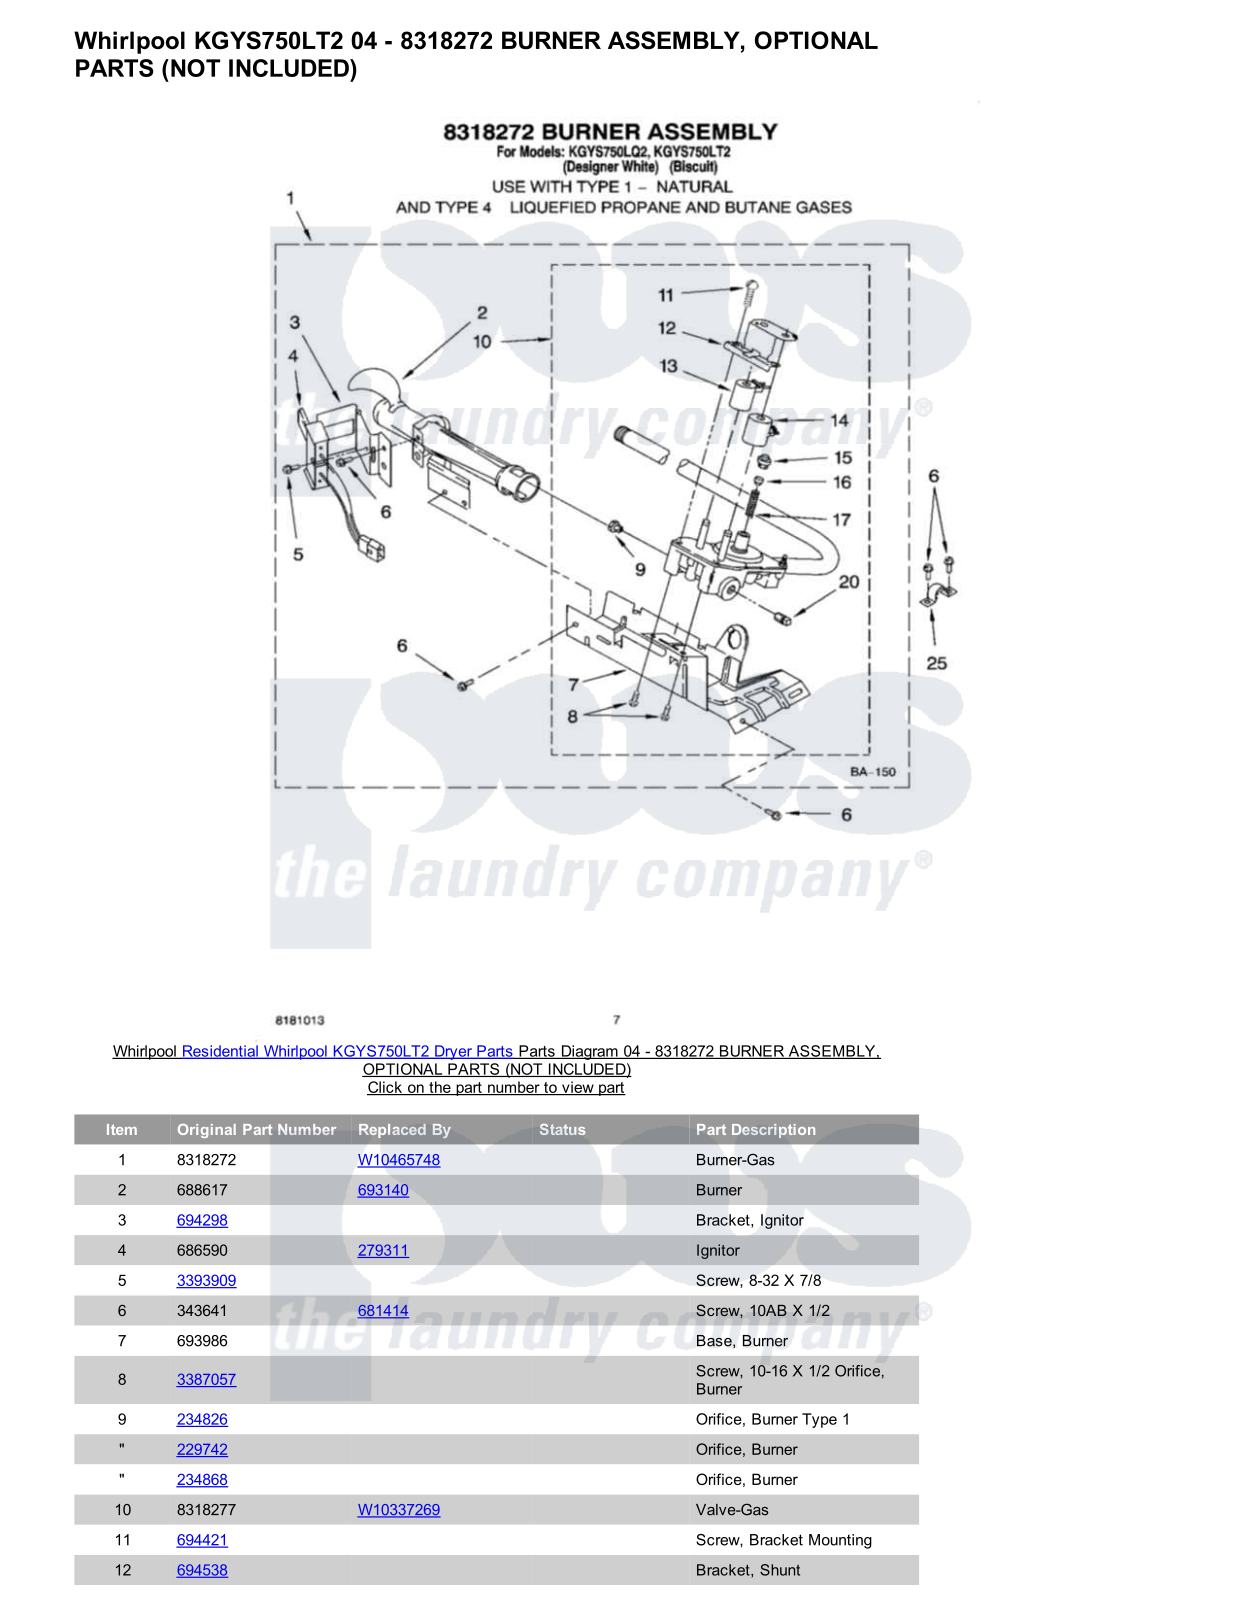 Whirlpool KGYS750LT2 Parts Diagram